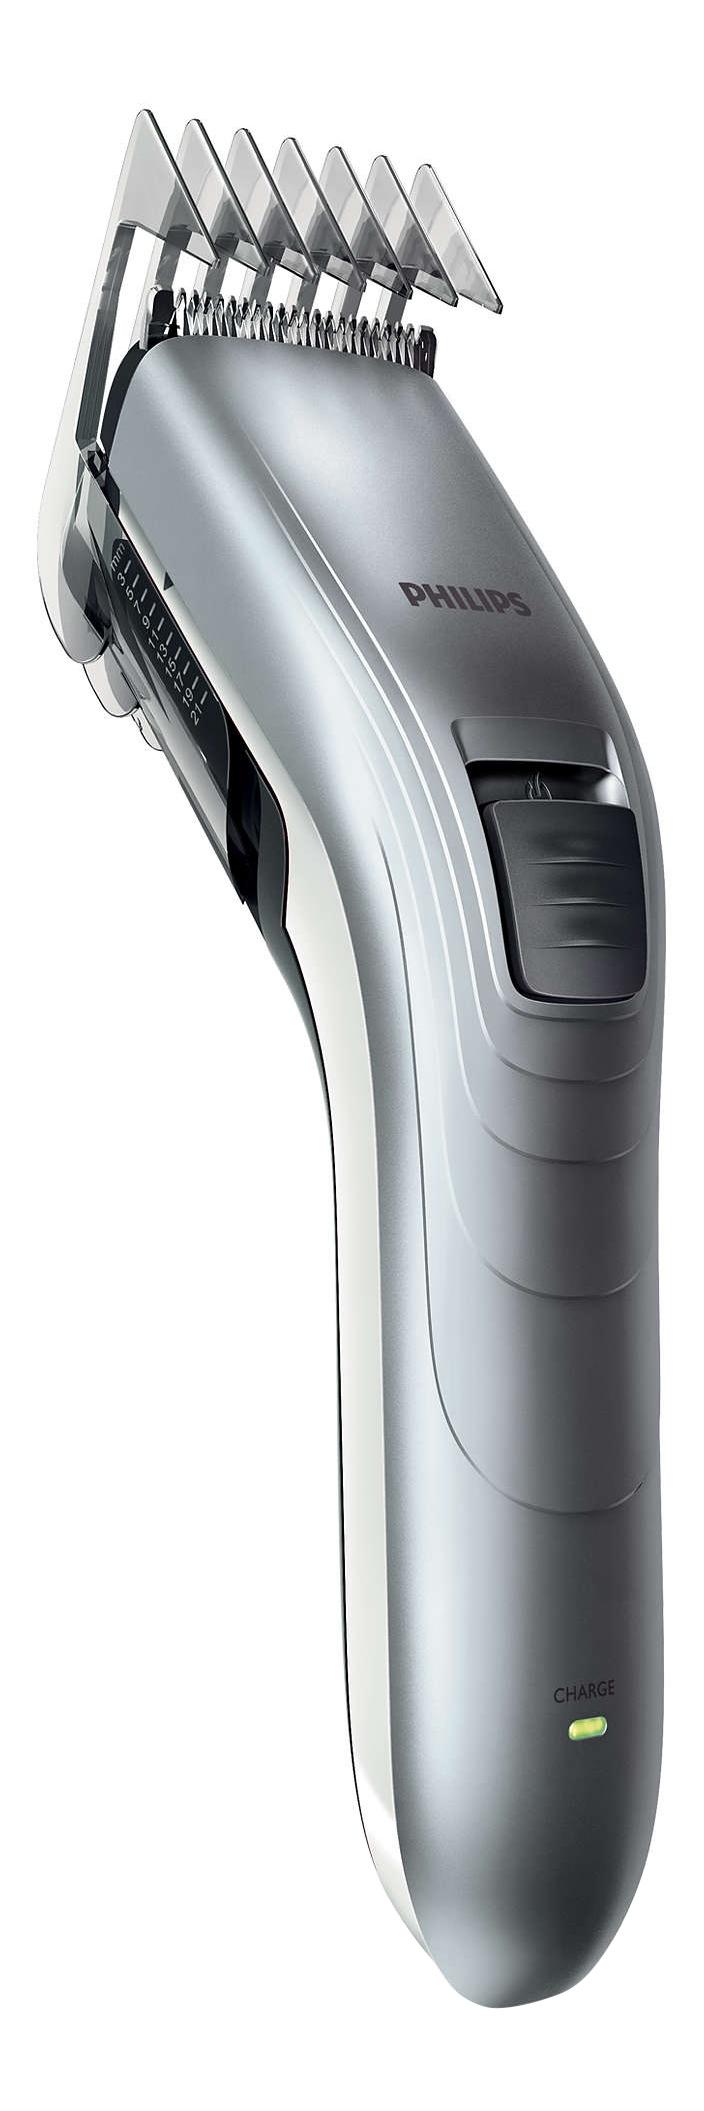 Машинка для стрижки волос Philips Series 3000 QC5130/ 15 машинка для стрижки волос philips hc5610 15